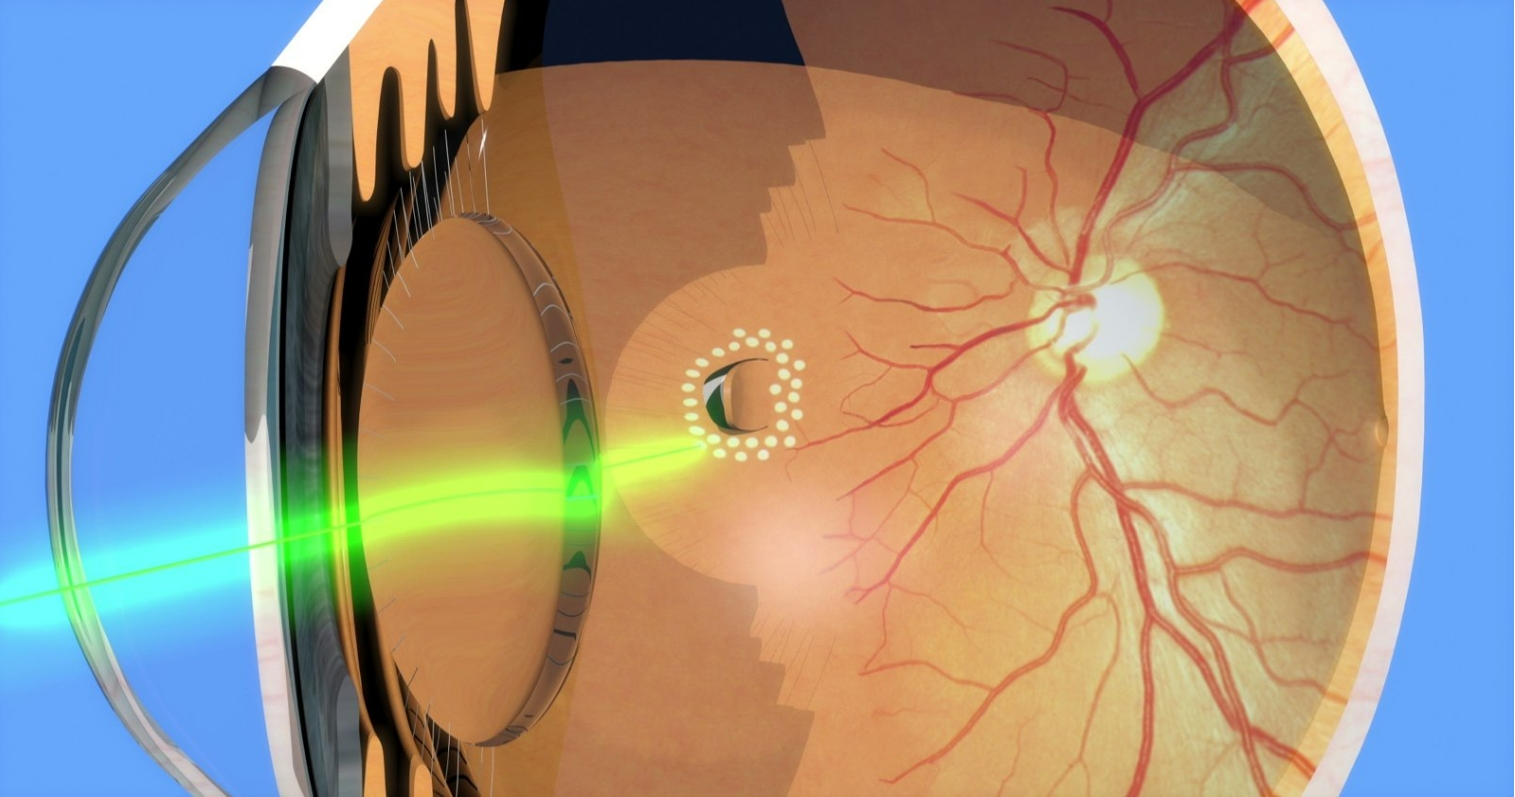 视网膜裂孔的图片.png